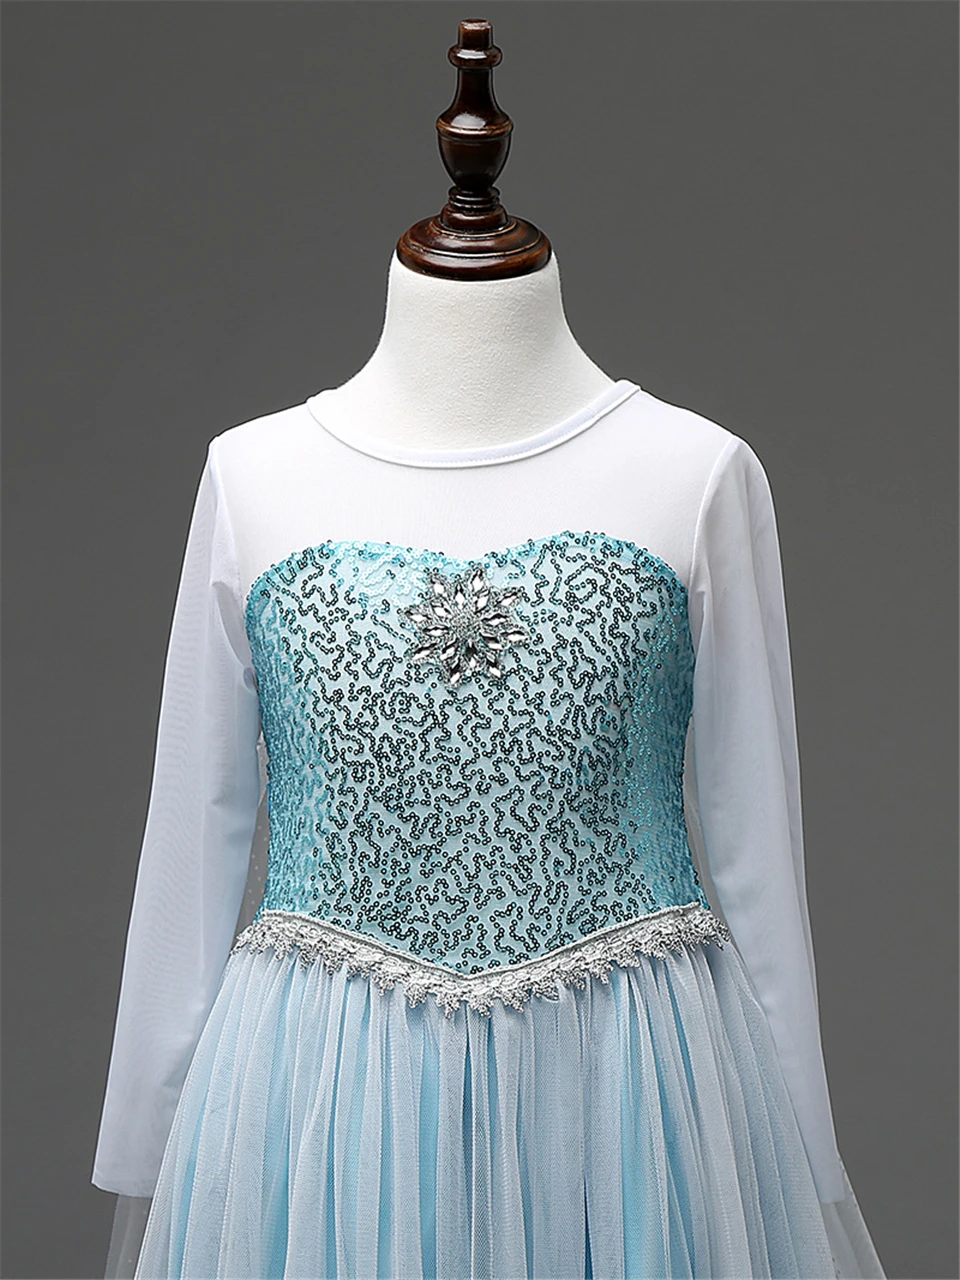 Нарядное платье Эльзы для детей; подарок на день рождения для маленьких девочек; платье Снежной королевы с блестками; длинный карнавальный костюм Эльзы; Fantasia Infantil